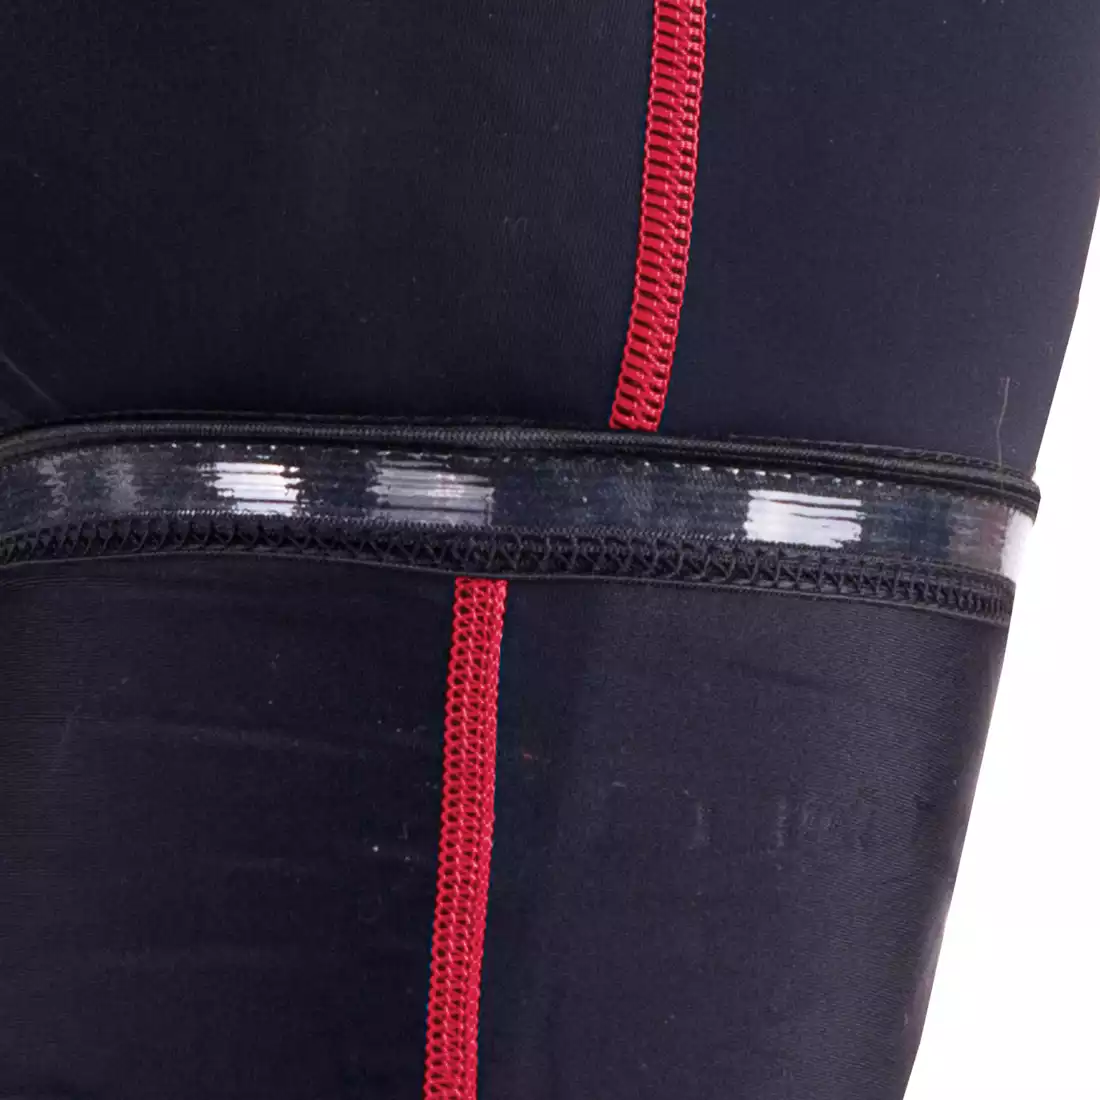 DEKO POCKET pantaloni scurți pentru bărbați, nnegru și roșu